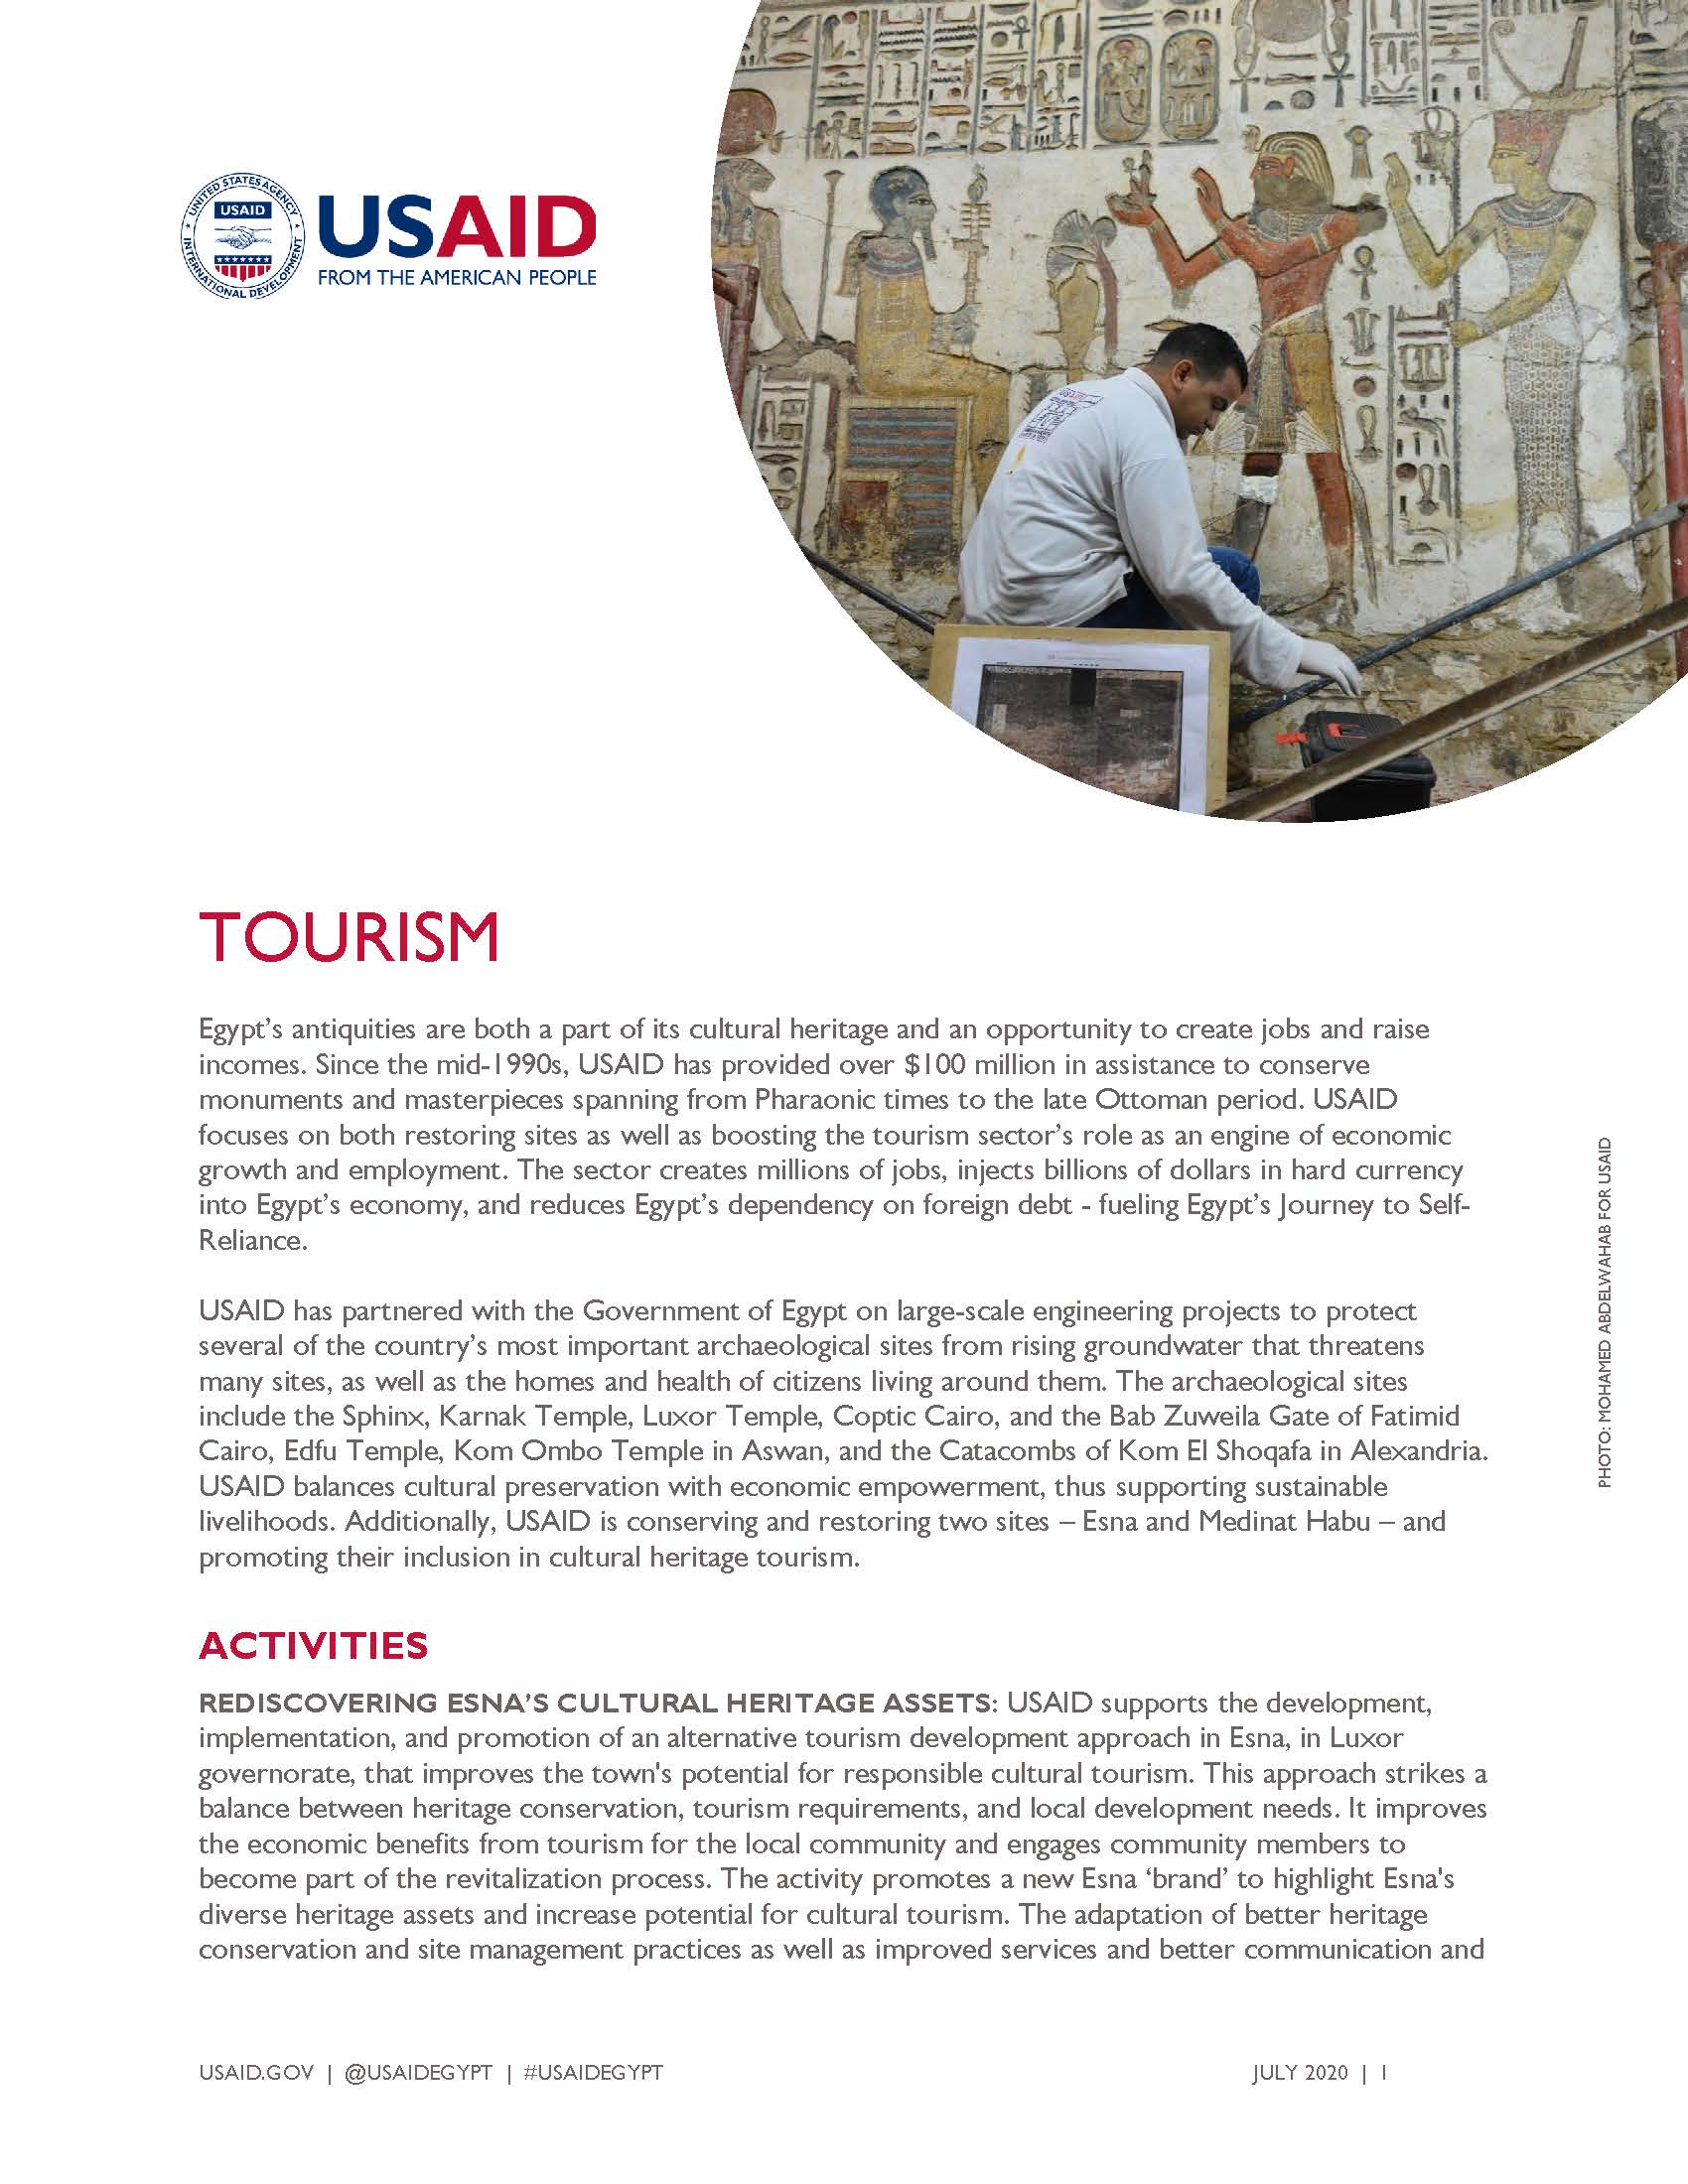 USAID/Egypt Fact Sheet: Tourism